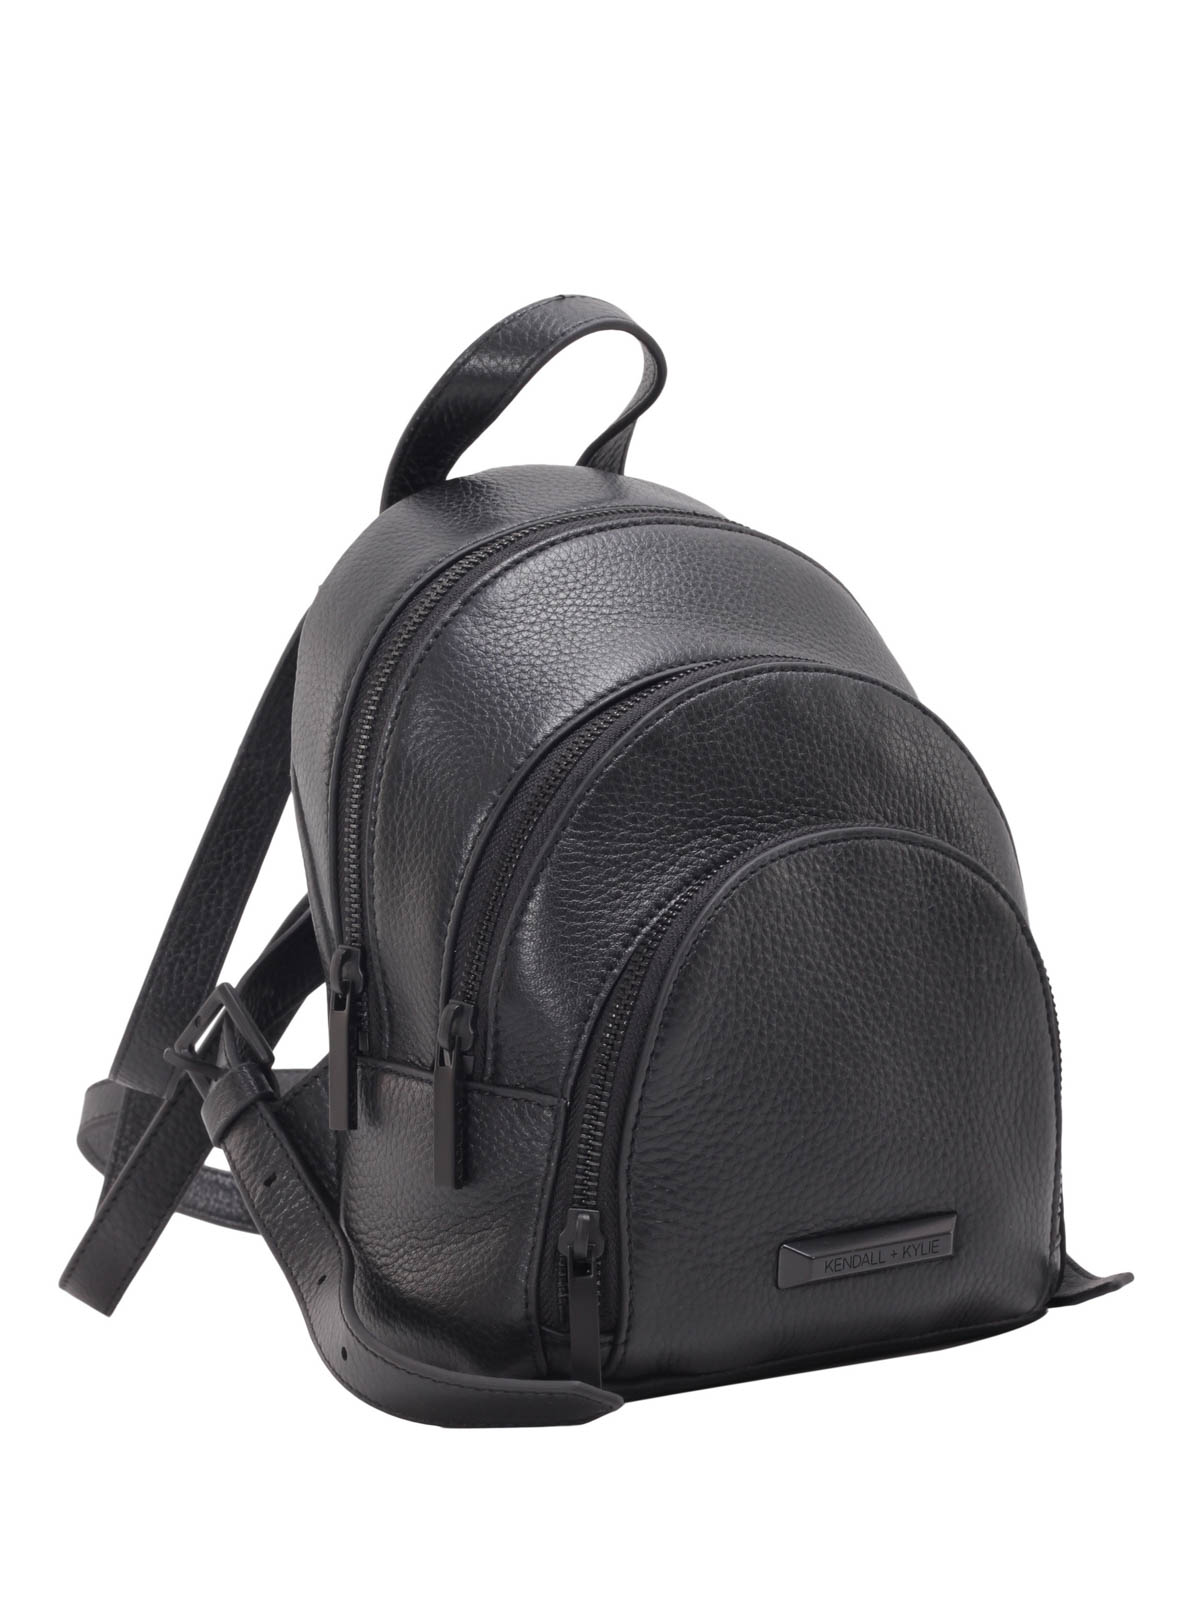 Backpacks Kendall + Kylie - Sloane mini backpack - HBKK316 | iKRIX.com